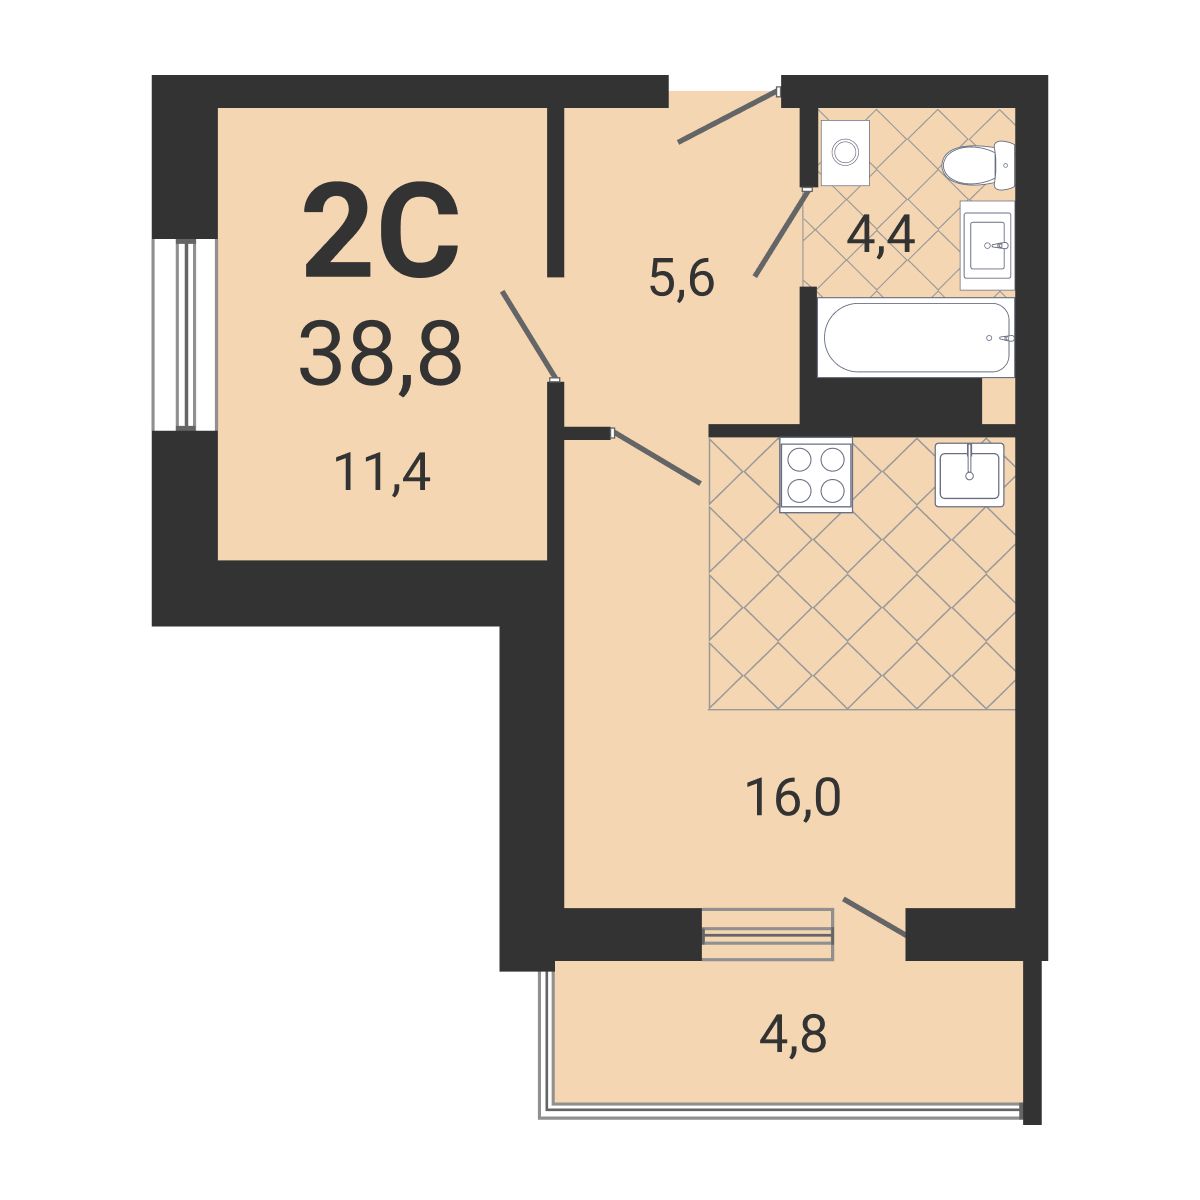 2-комнатная квартира 38.8м2 ЖК Тетрис